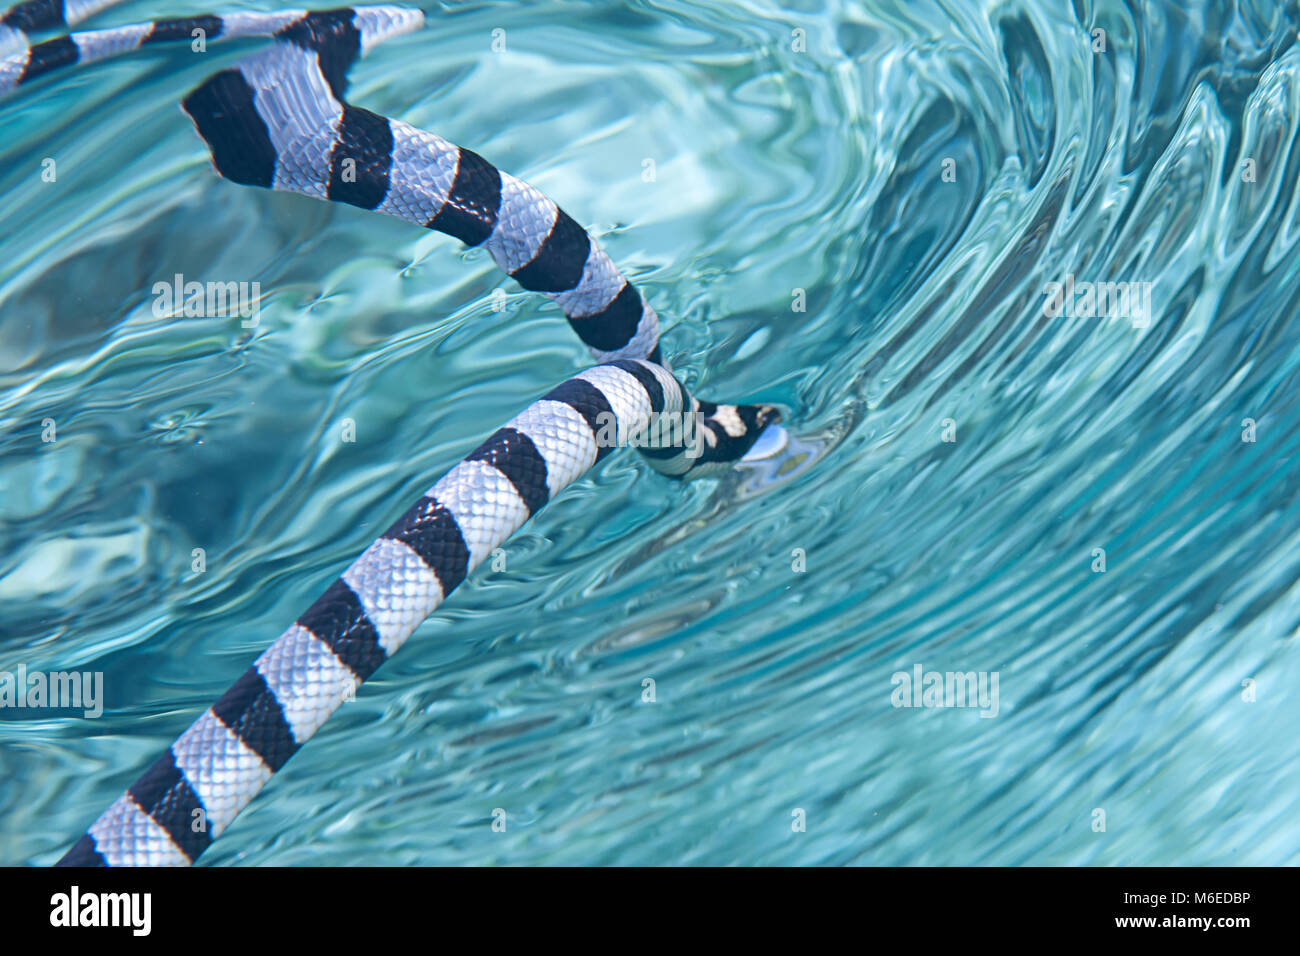 Schwache gebänderte Seeschlange oder belcher Sea snake (Hydrophis belcheri) schwimmen auf der Wasseroberfläche für frische Luft, Bali, Indonesien Stockfoto